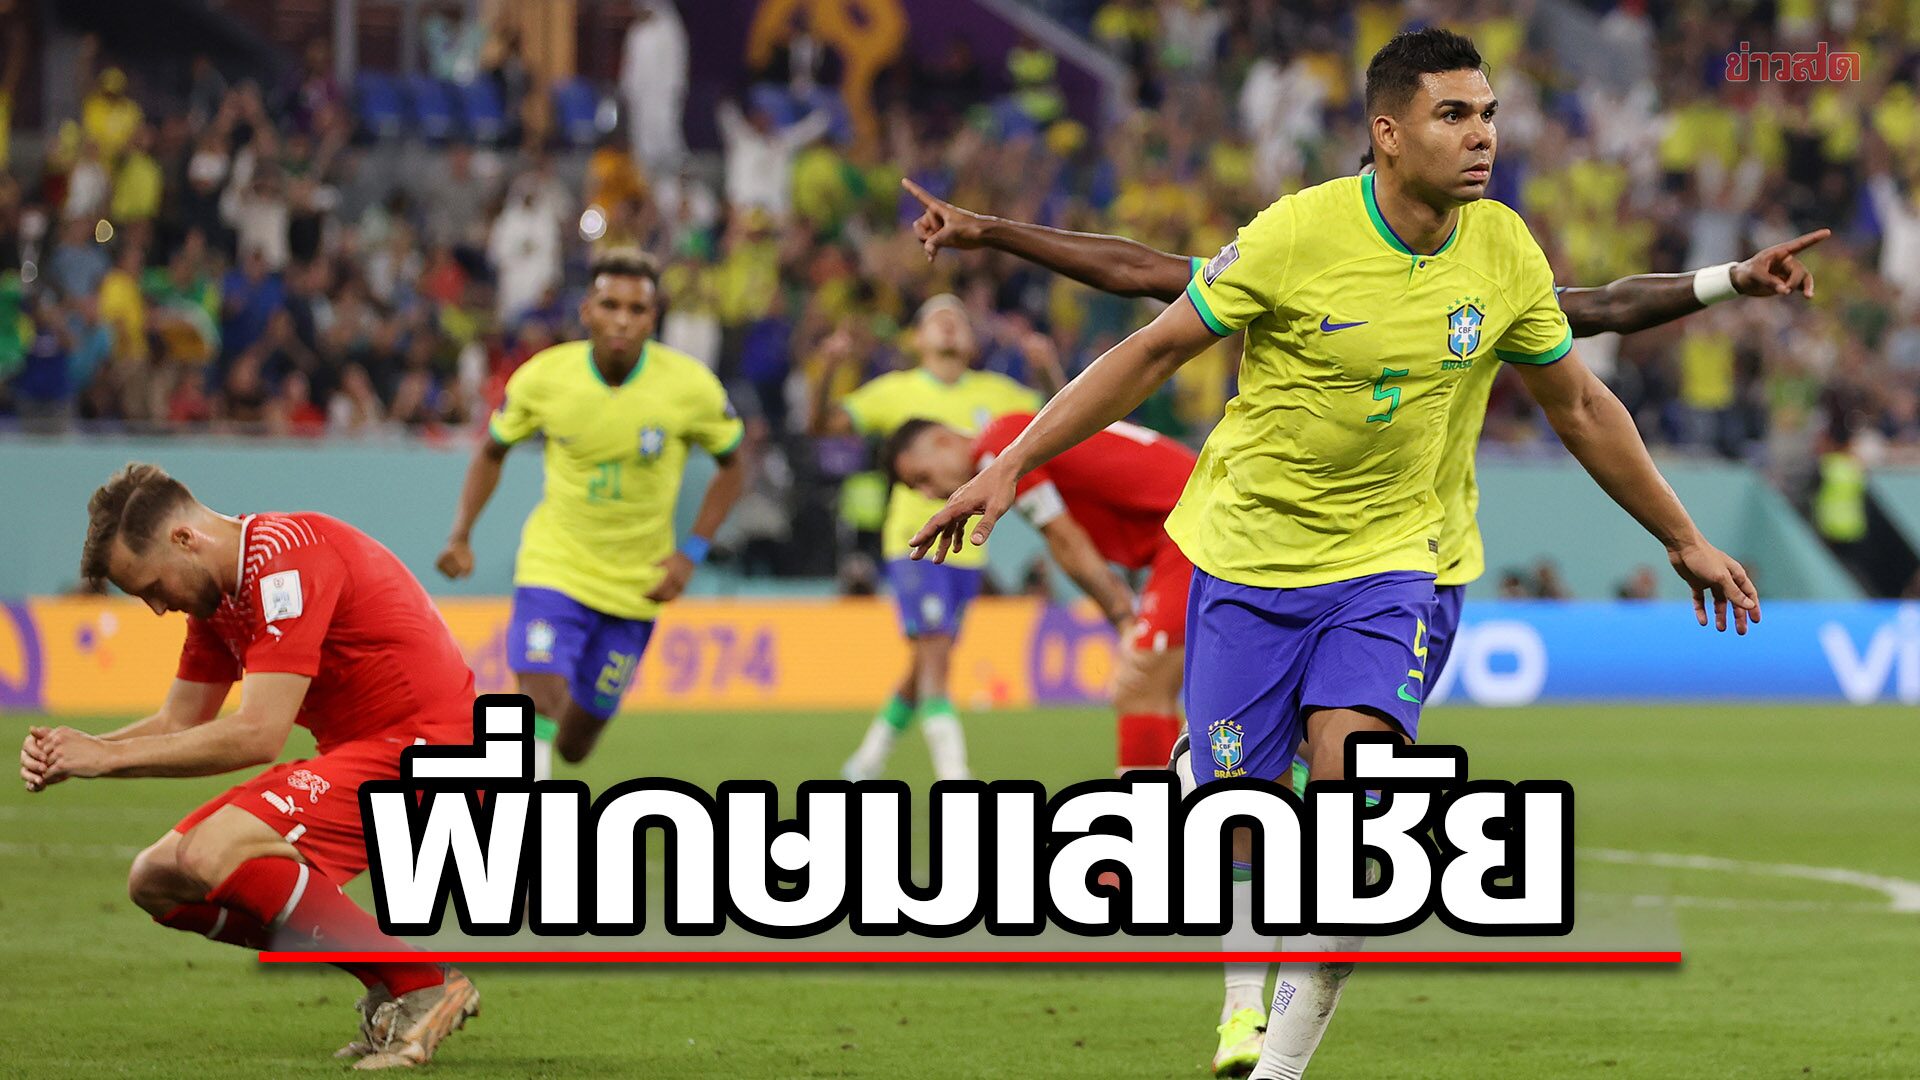 คาเซมิโร ฮีโร่ซัดชัยท้ายเกม ช่วย บราซิล เฉือน สวิส ทะลุ 16 ทีมฟุตบอลโลก